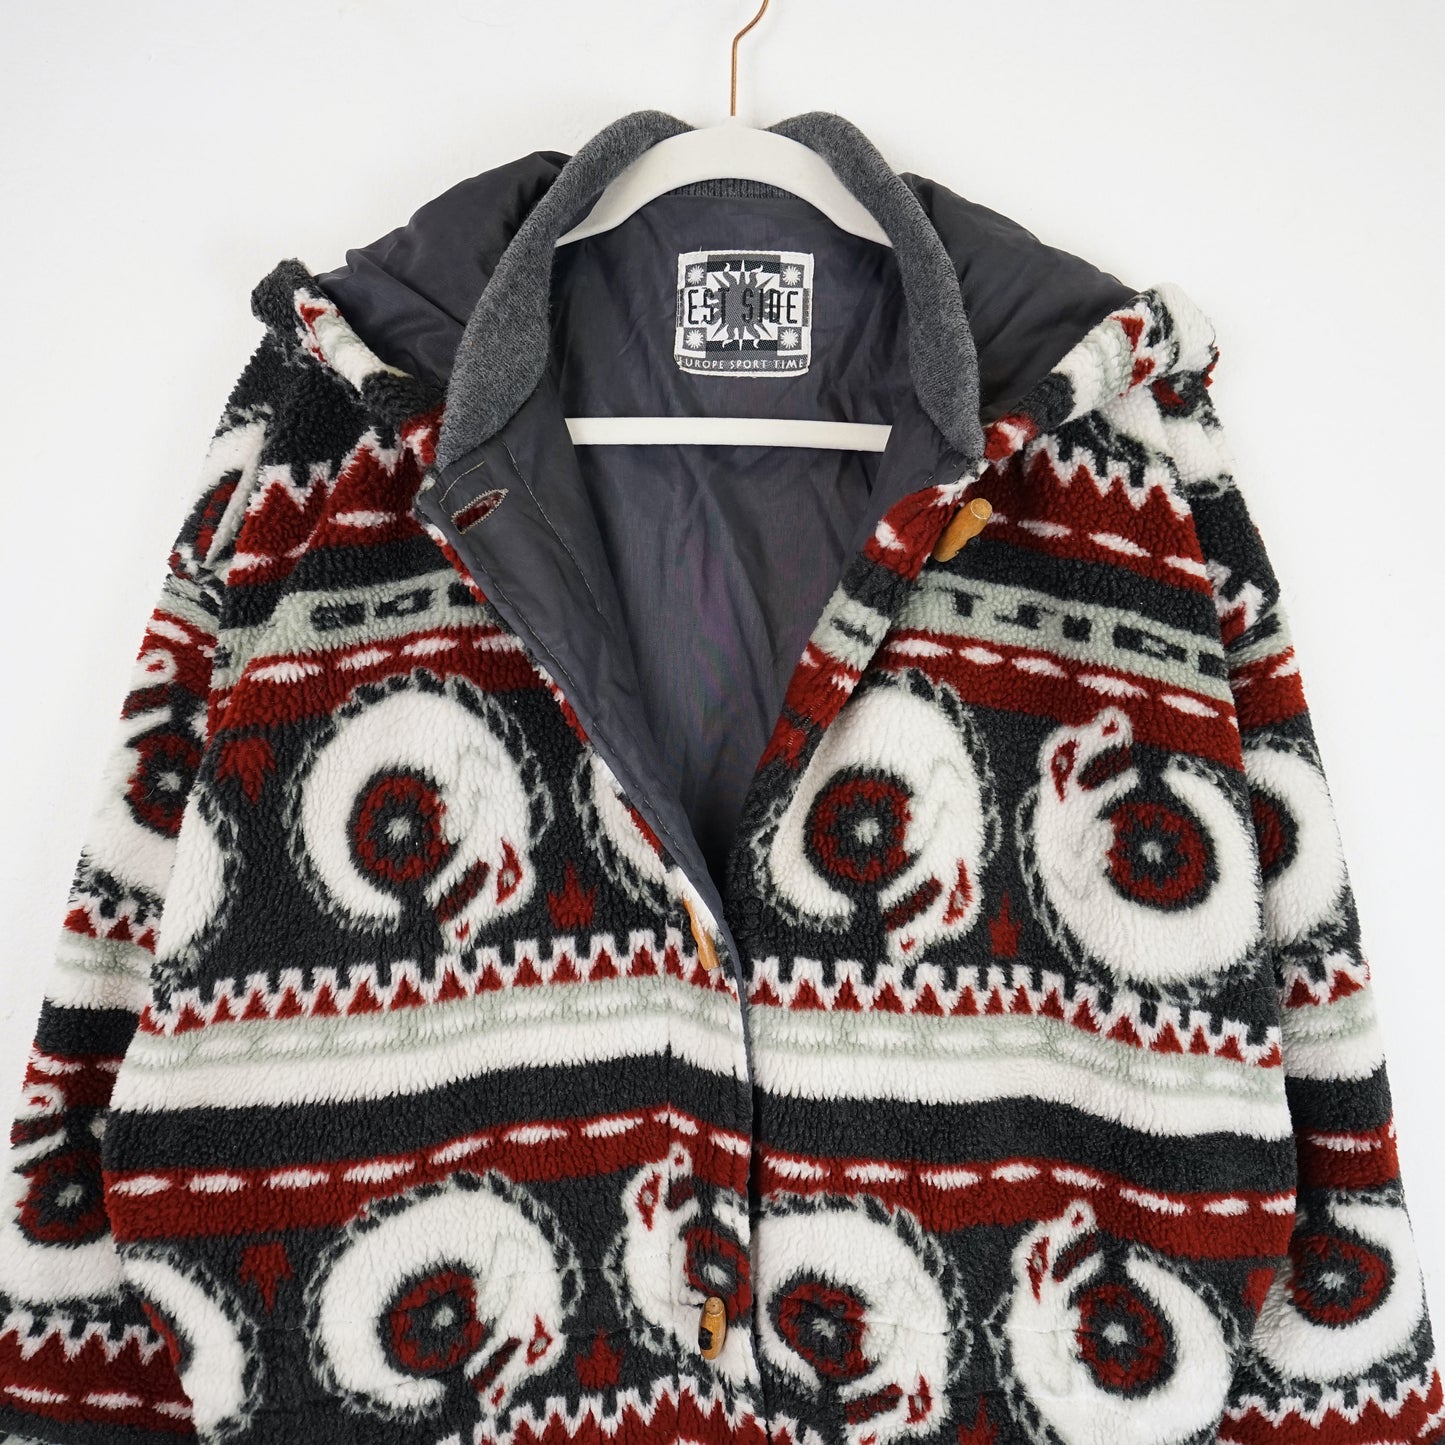 Vintage cozy Fleece Jacket Size L-XL